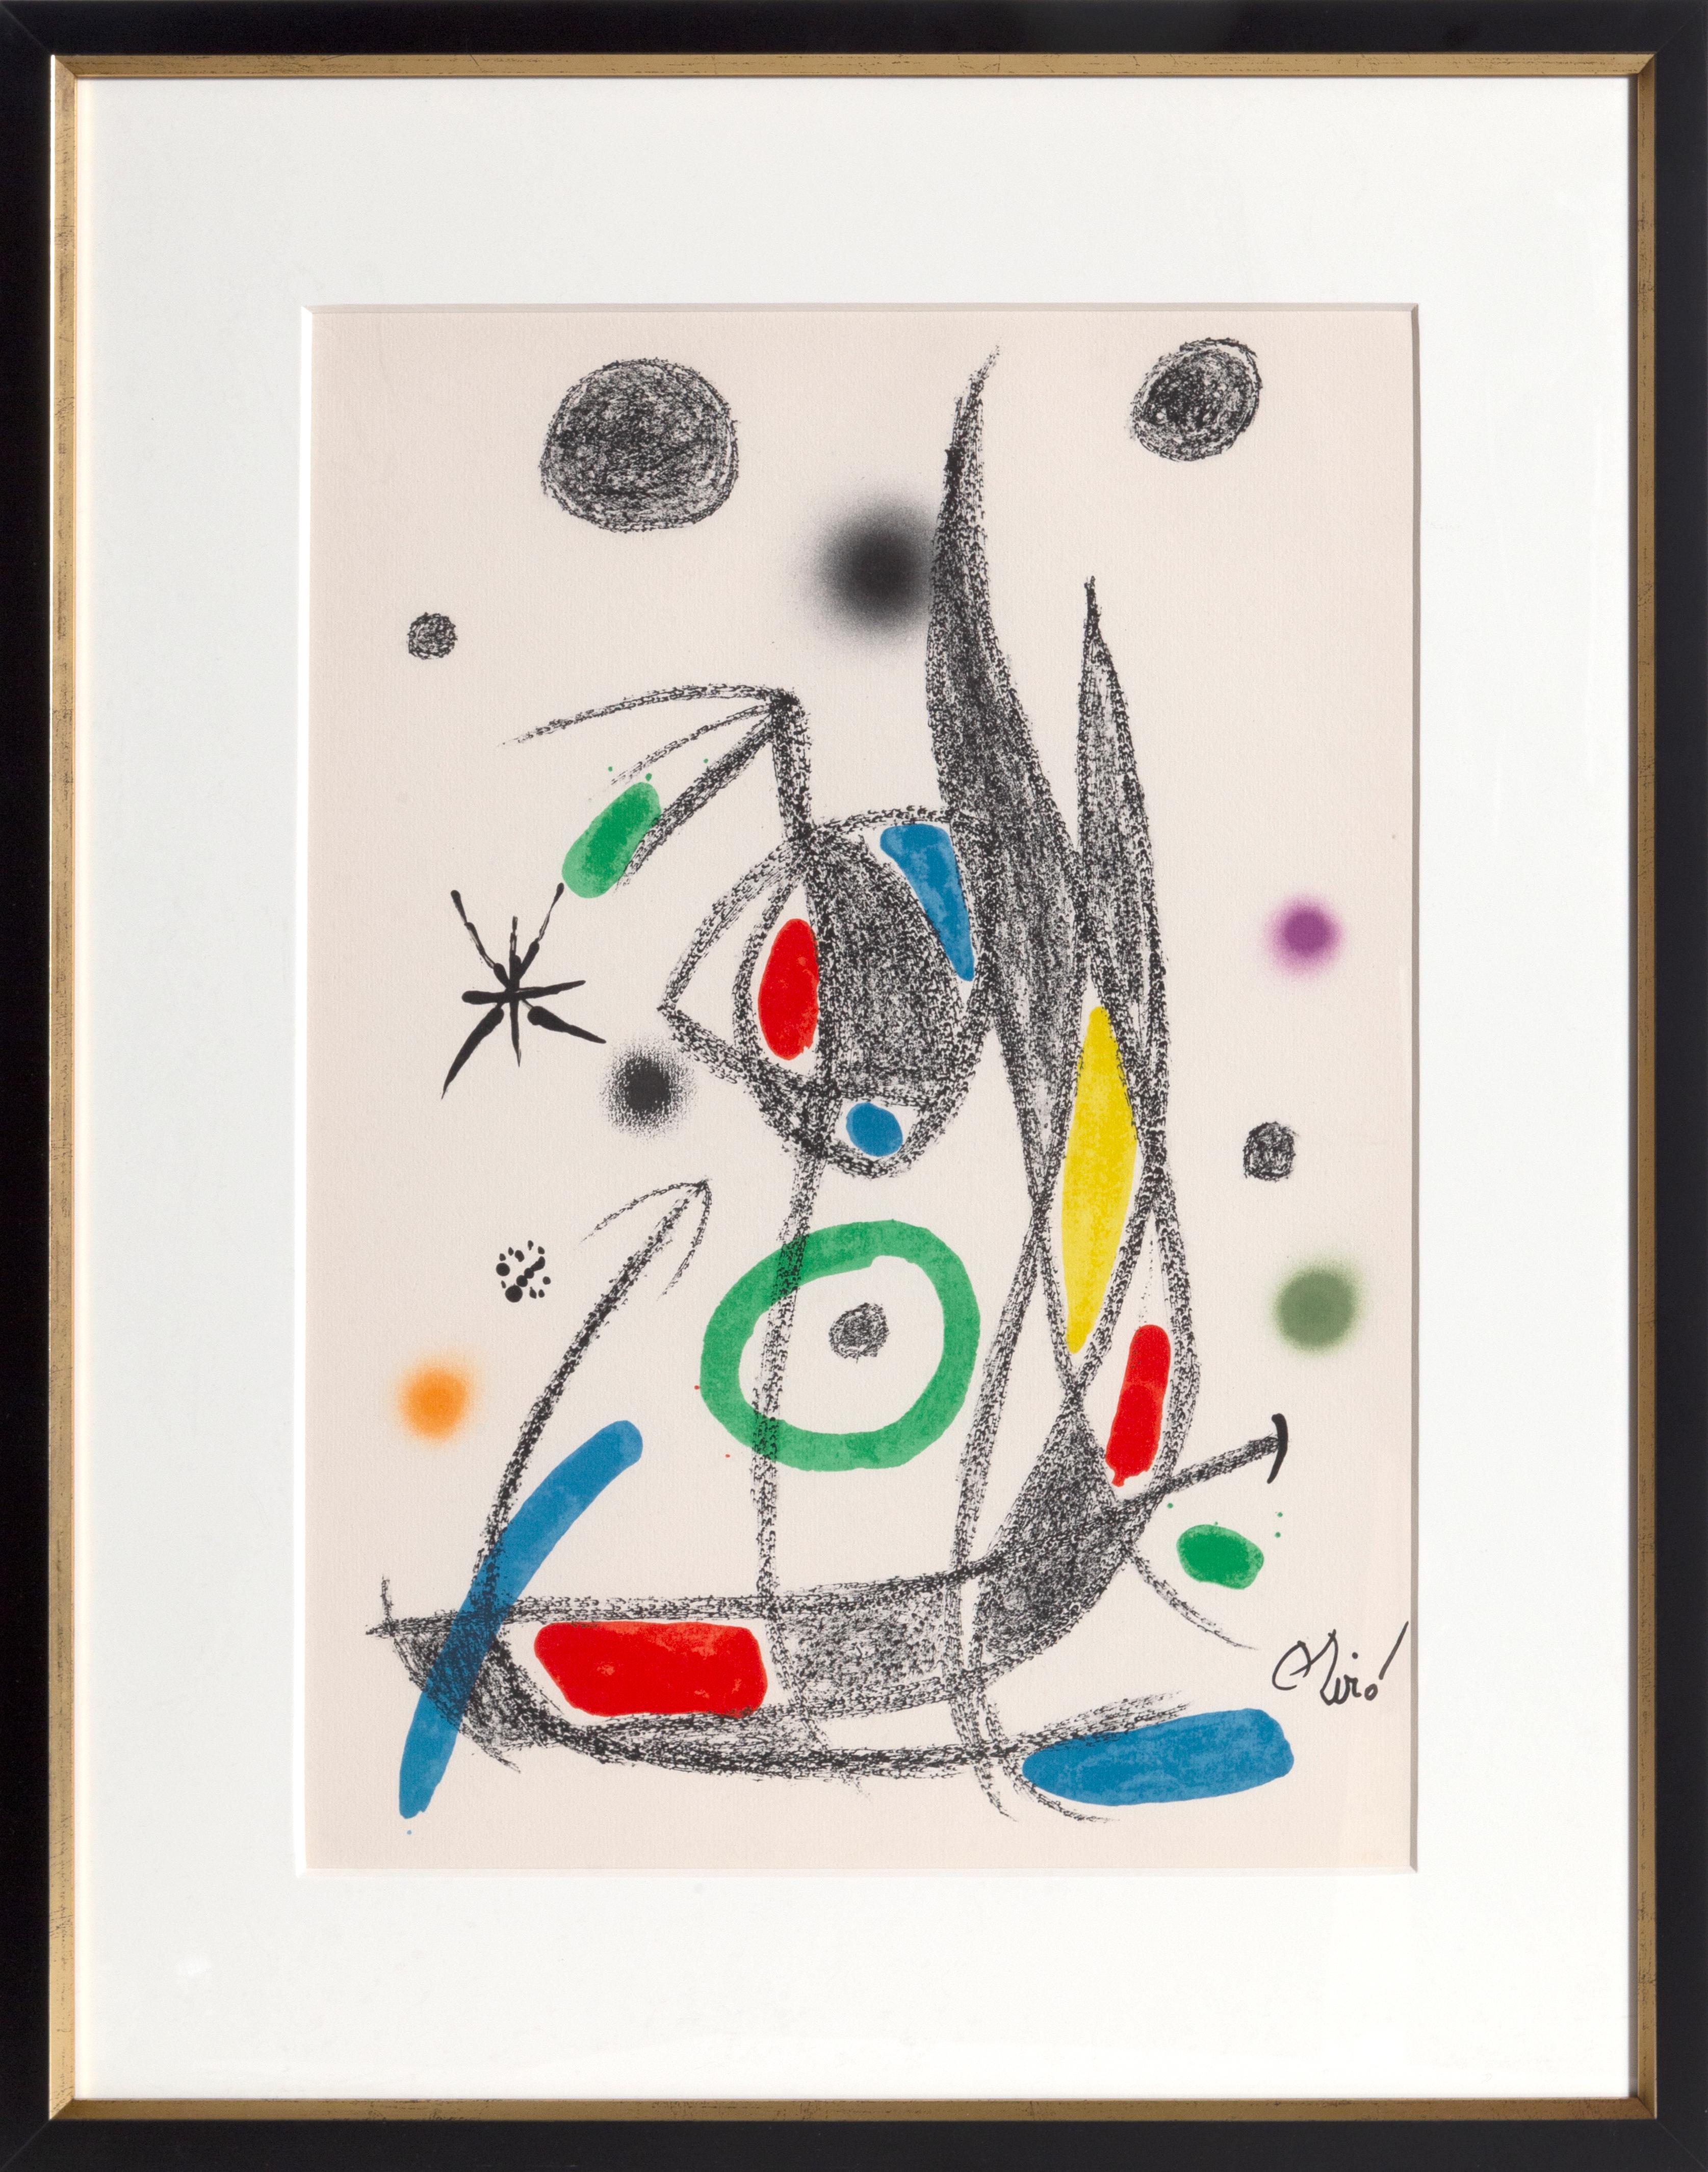 Joan Miró Abstract Print – Maravillas mit Variaciones Acrosticas im Jardin de Miro (Number 16)